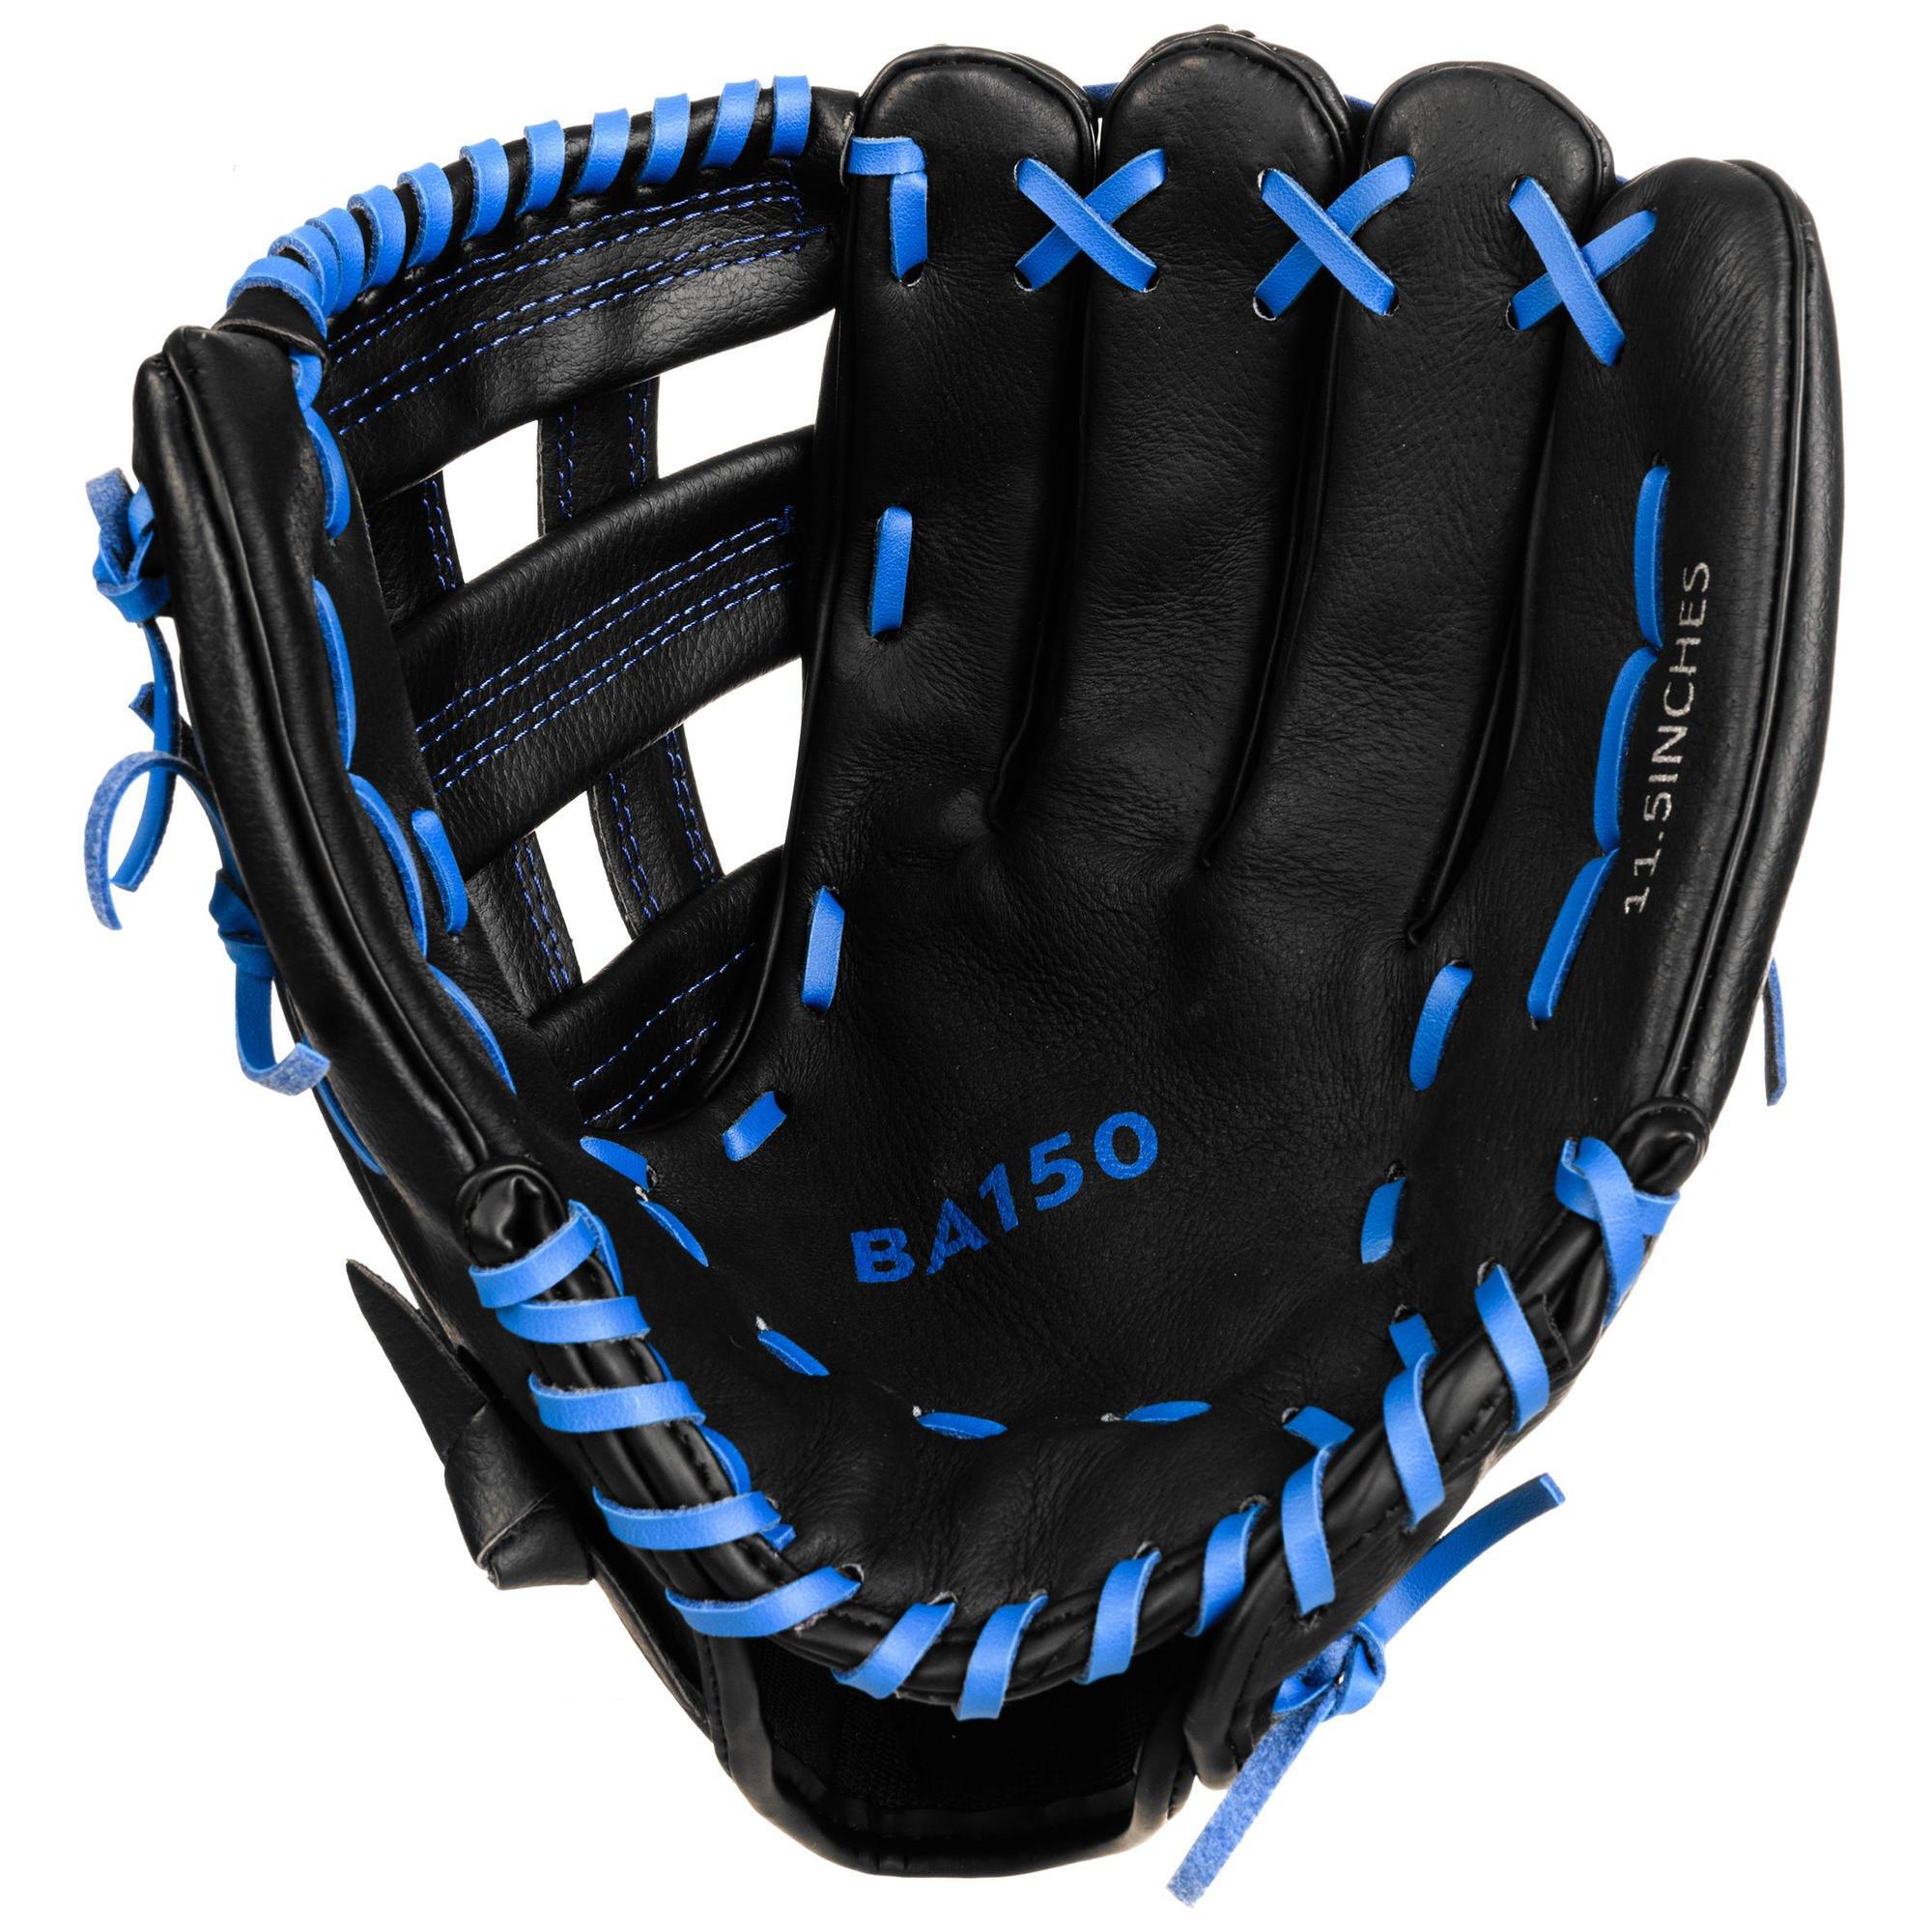 ловушка перчатка для игры в бейсбол для правой руки Бейсбольная перчатка Decathlon для правой руки, для взрослых Kipsta, черный